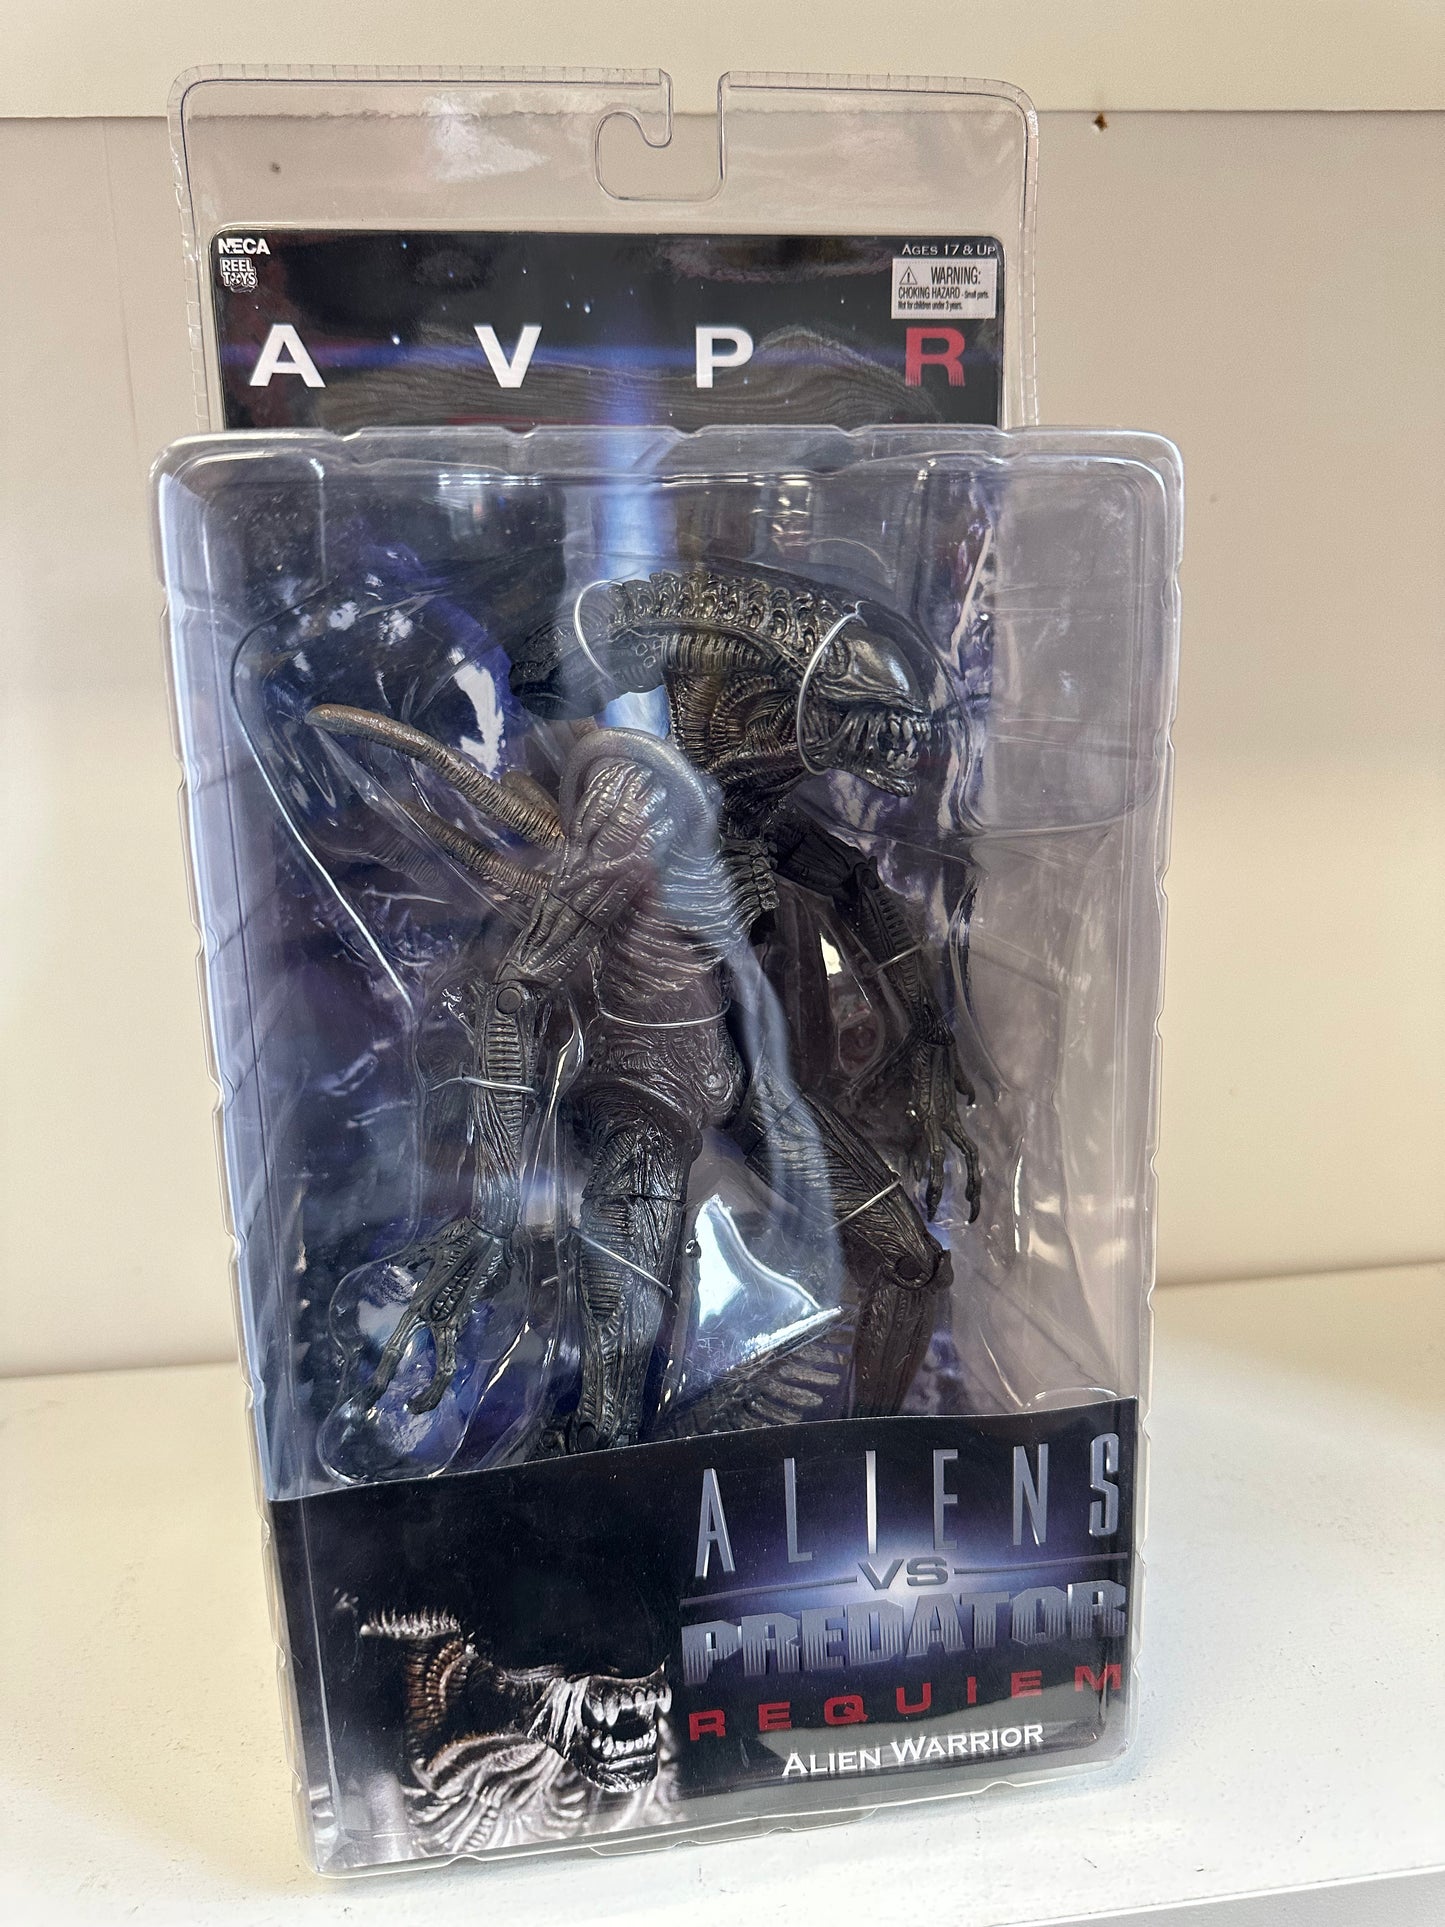 AVP Requiem Alien Warrior Sealed